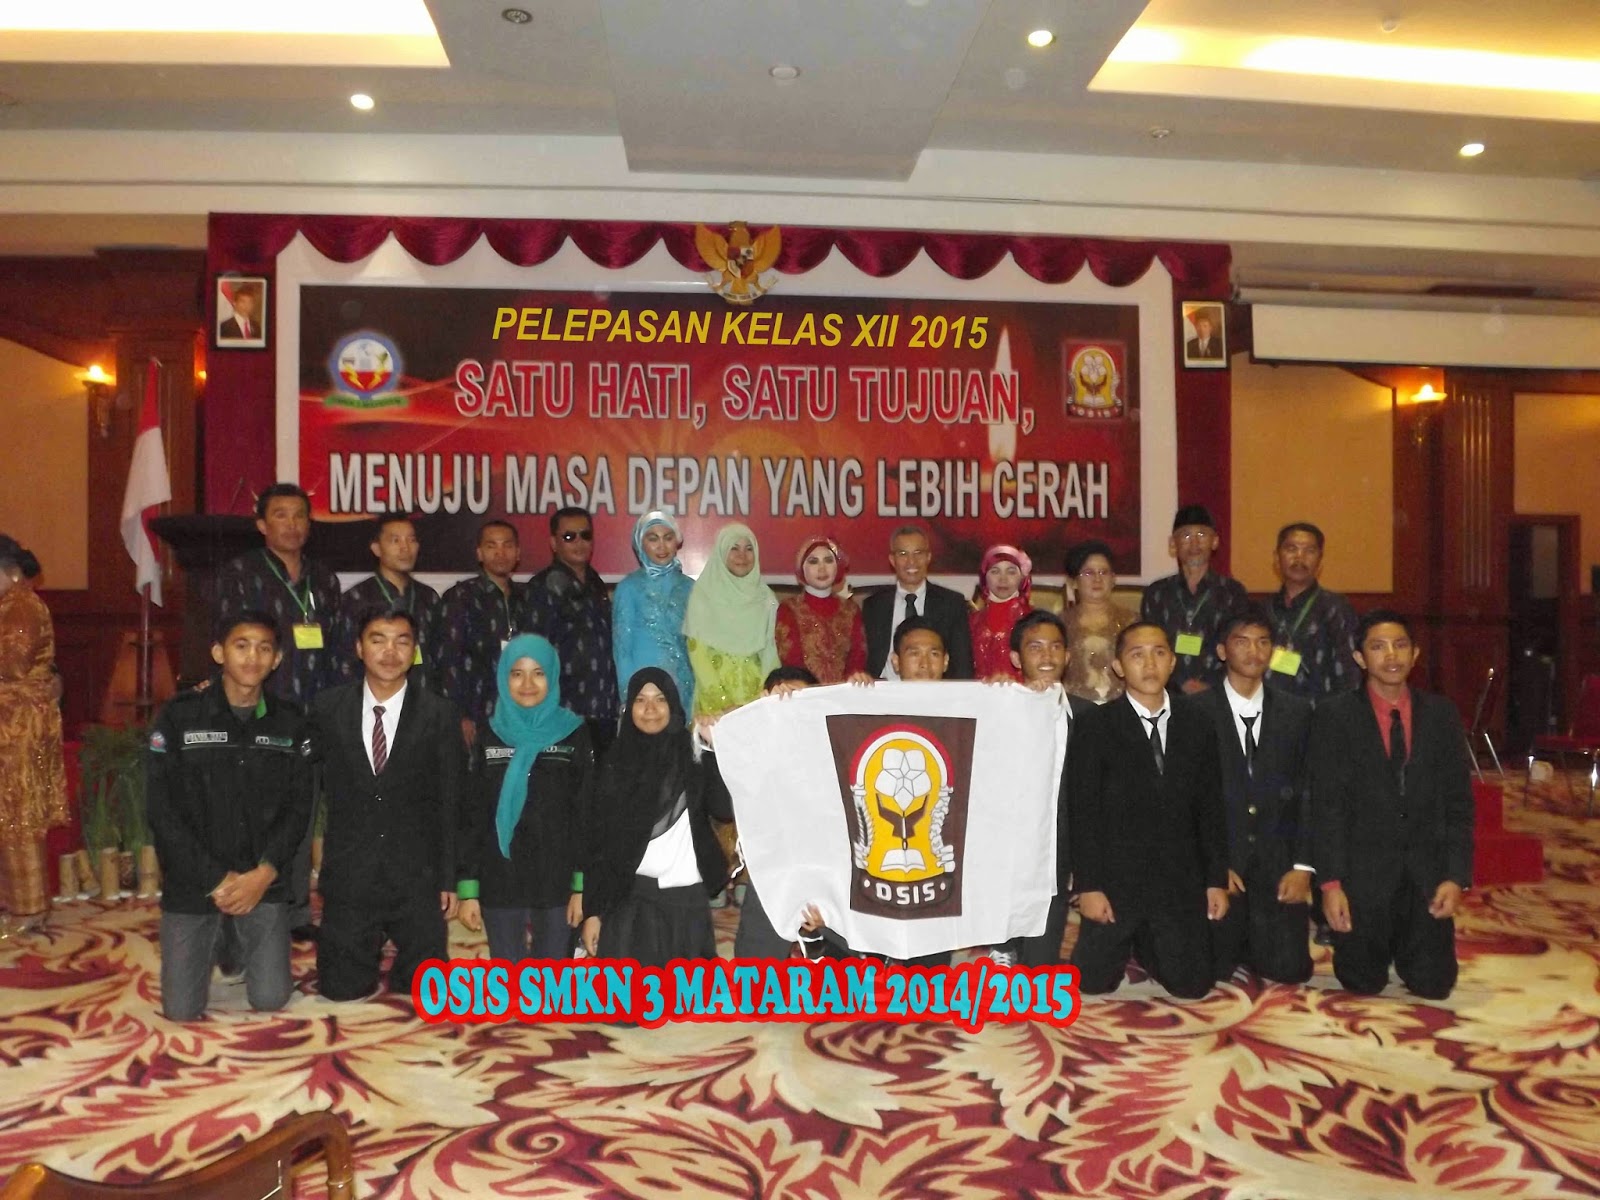 Keberhasilan dan lancarnya acara pelepasan kelas XII SMKN 3 Mataram 2015 yang di adakan di Selaparang Ballroom Hotel Lombok Raya Mataram pada hari